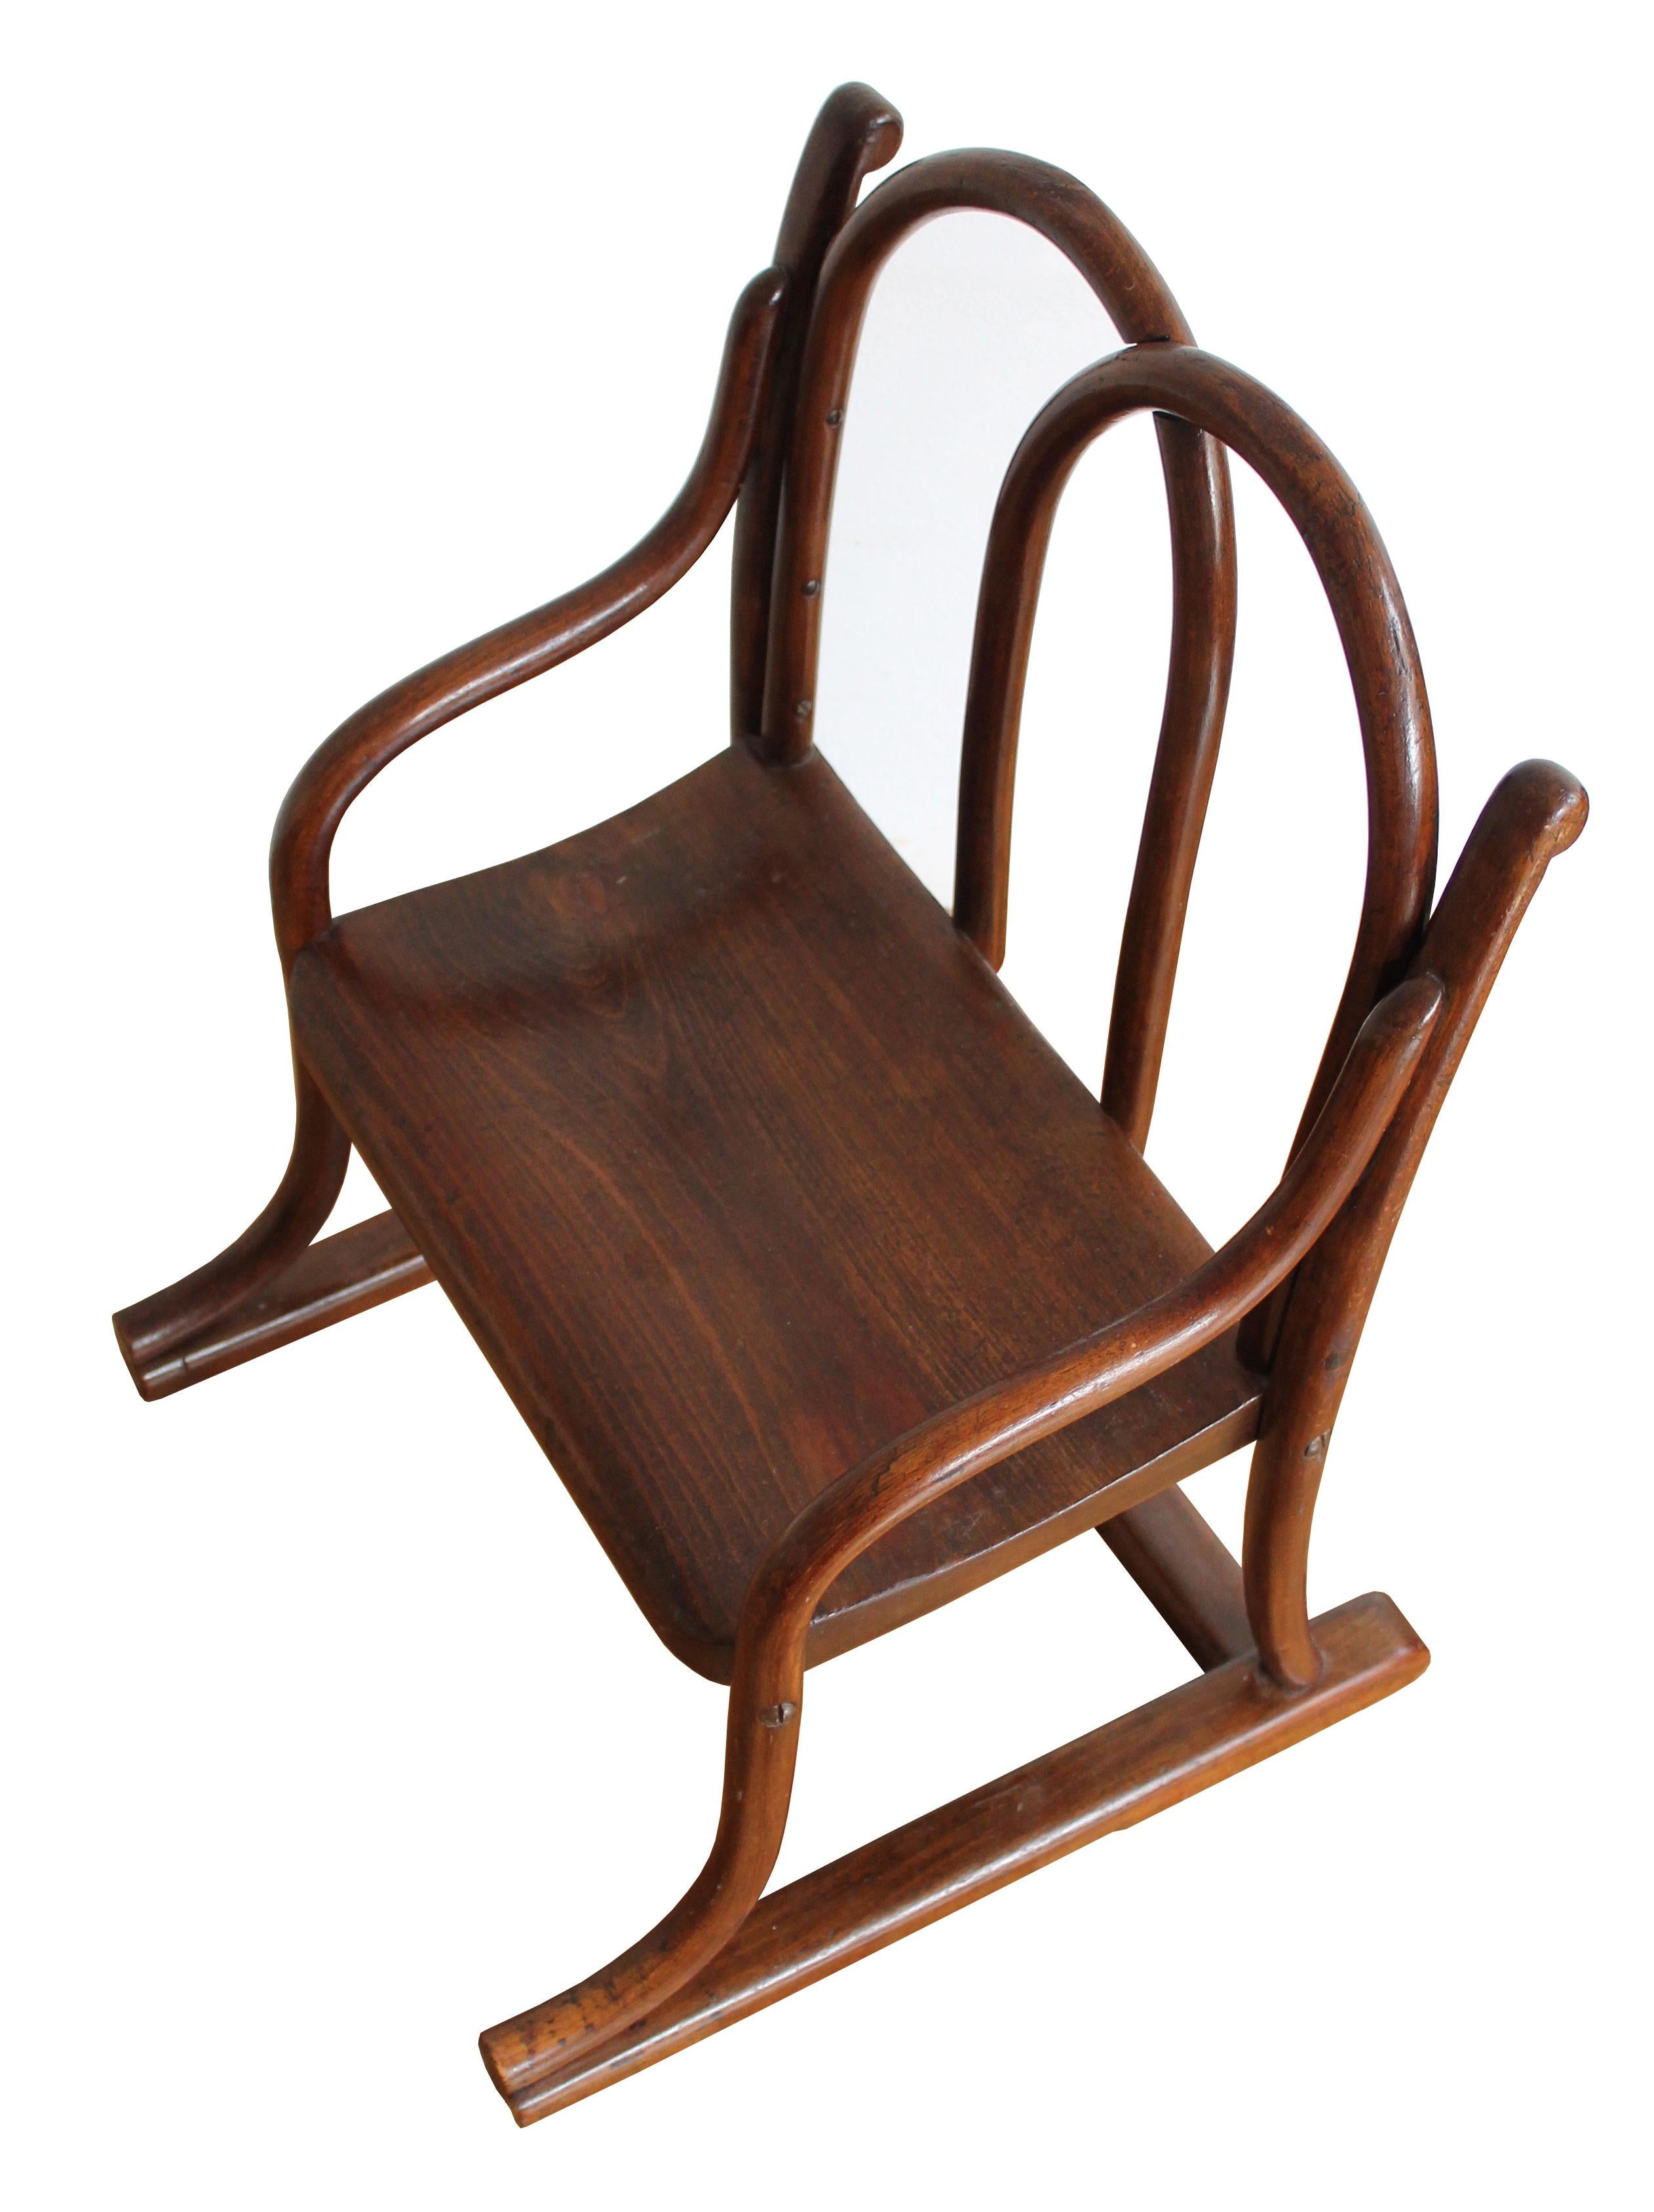 Une authentique chaise d'enfant en bois courbé fabriquée au début du 20e siècle. A l'origine, cette chaise était reliée à un petit bureau. Thonet a produit ce type de meubles pour enfants dès la fin du XIXe siècle. Il existait plusieurs modèles,